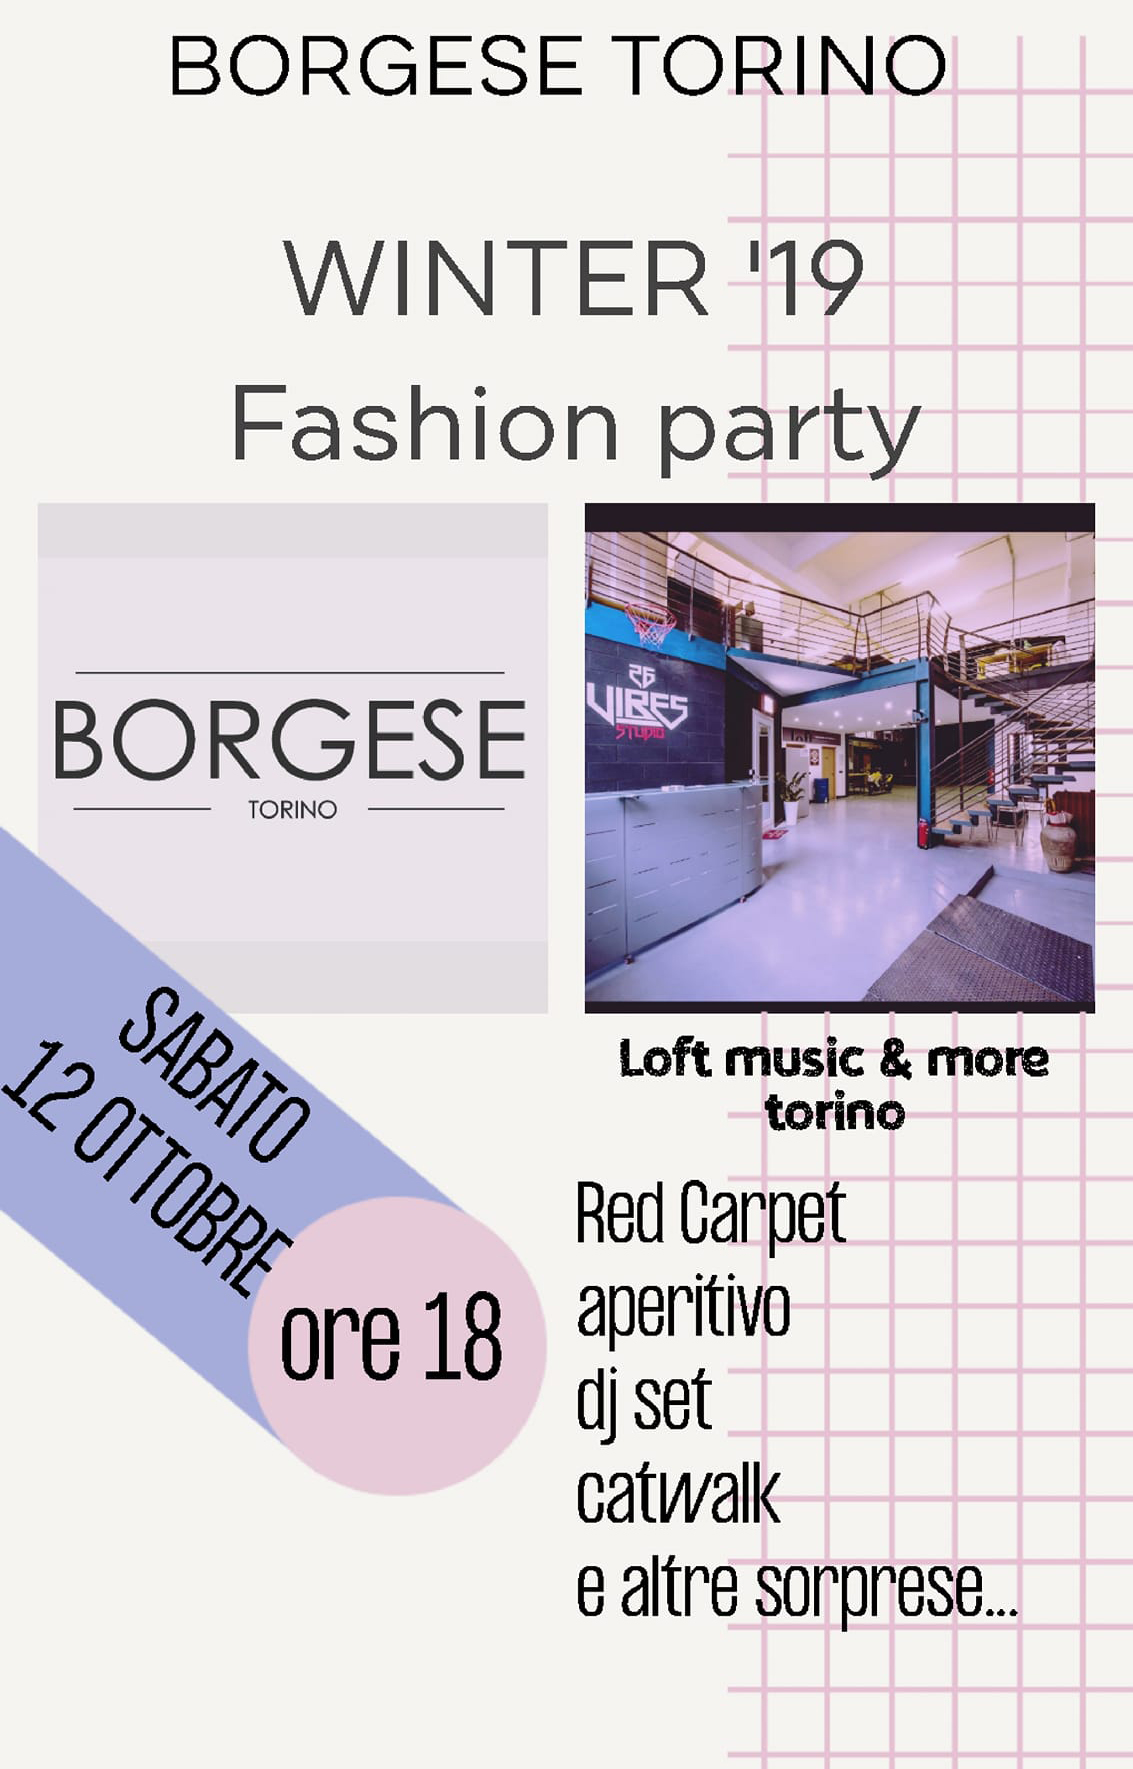 001 .jpg - 12/10/2019. Torino. Borgese, winter '19 Fashion Party al Loft di Via Cervino per il lancio di una nuova linea di prodotto.. Gli ospiti e la festa.